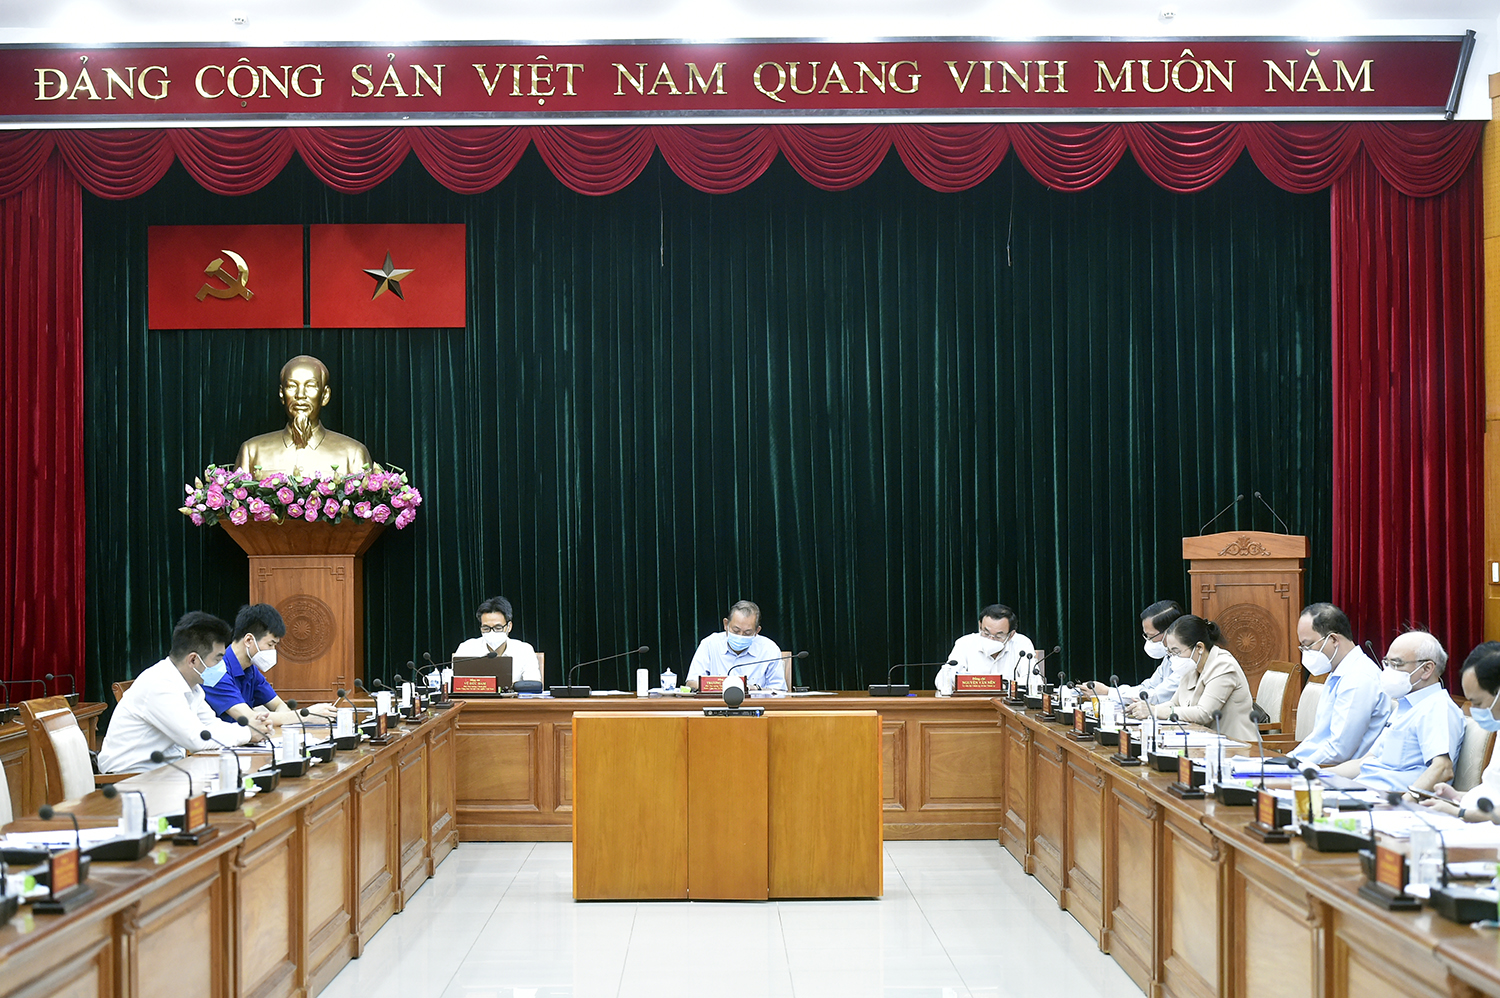 Phó Thủ tướng Thường trực Trương Hòa Bình, Phó Thủ tướng Vũ Đức Đam, Bí thư Thành ủy TP.HCM Nguyễn Văn Nên dự họp tại đầu cầu TP.HCM